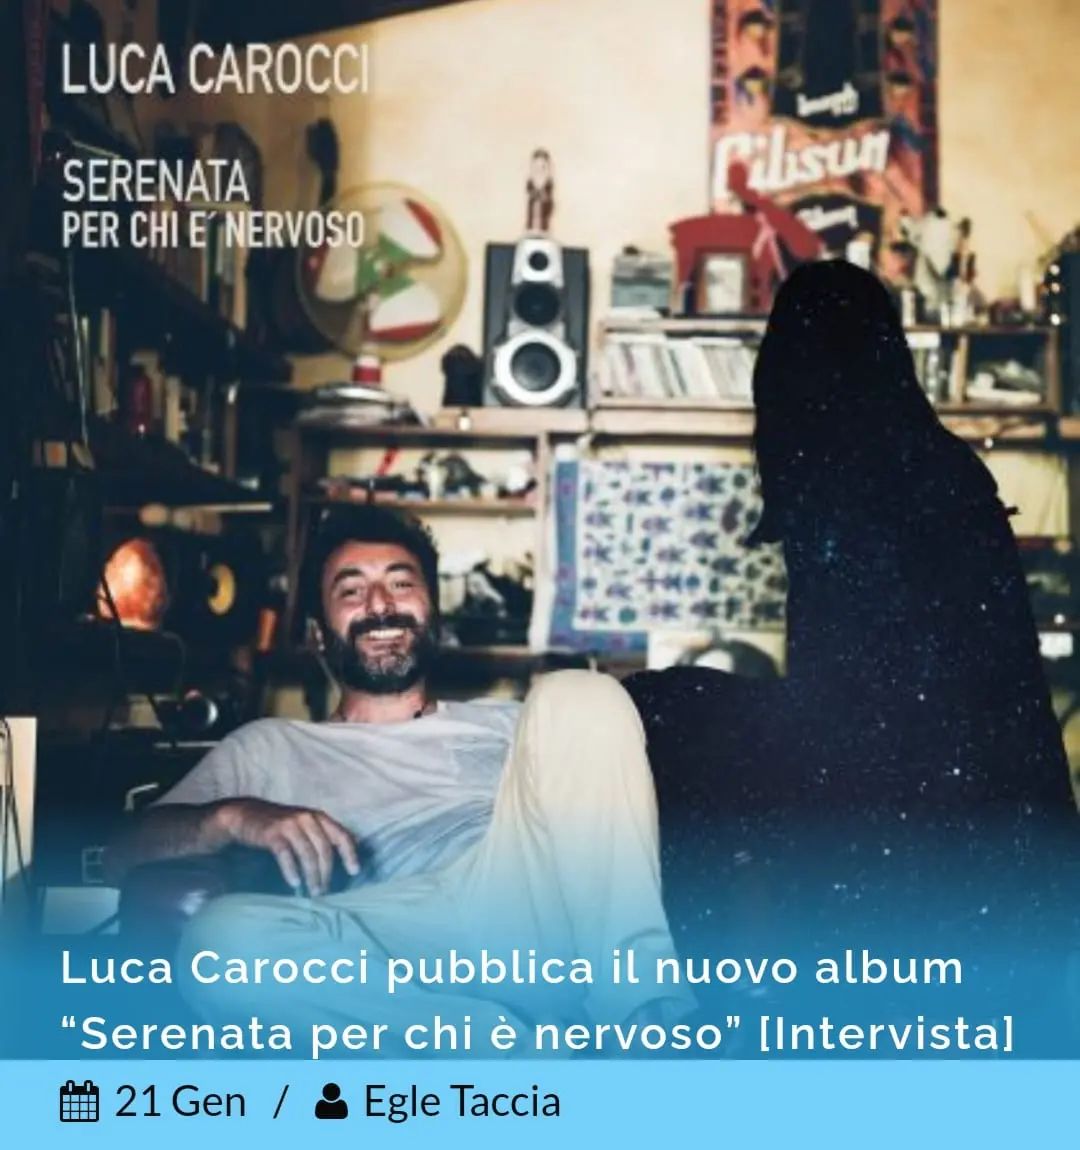 #nointerview @tacciaegle ha incontrato @luca_carocci Intervista su www.nonsensemag.it
#lucacarocci #serenataperchiènervoso #intervista #interview #musicinterview #instamusic #music #nonsensemag #novità #nonsense #onlygoodmusic #musica